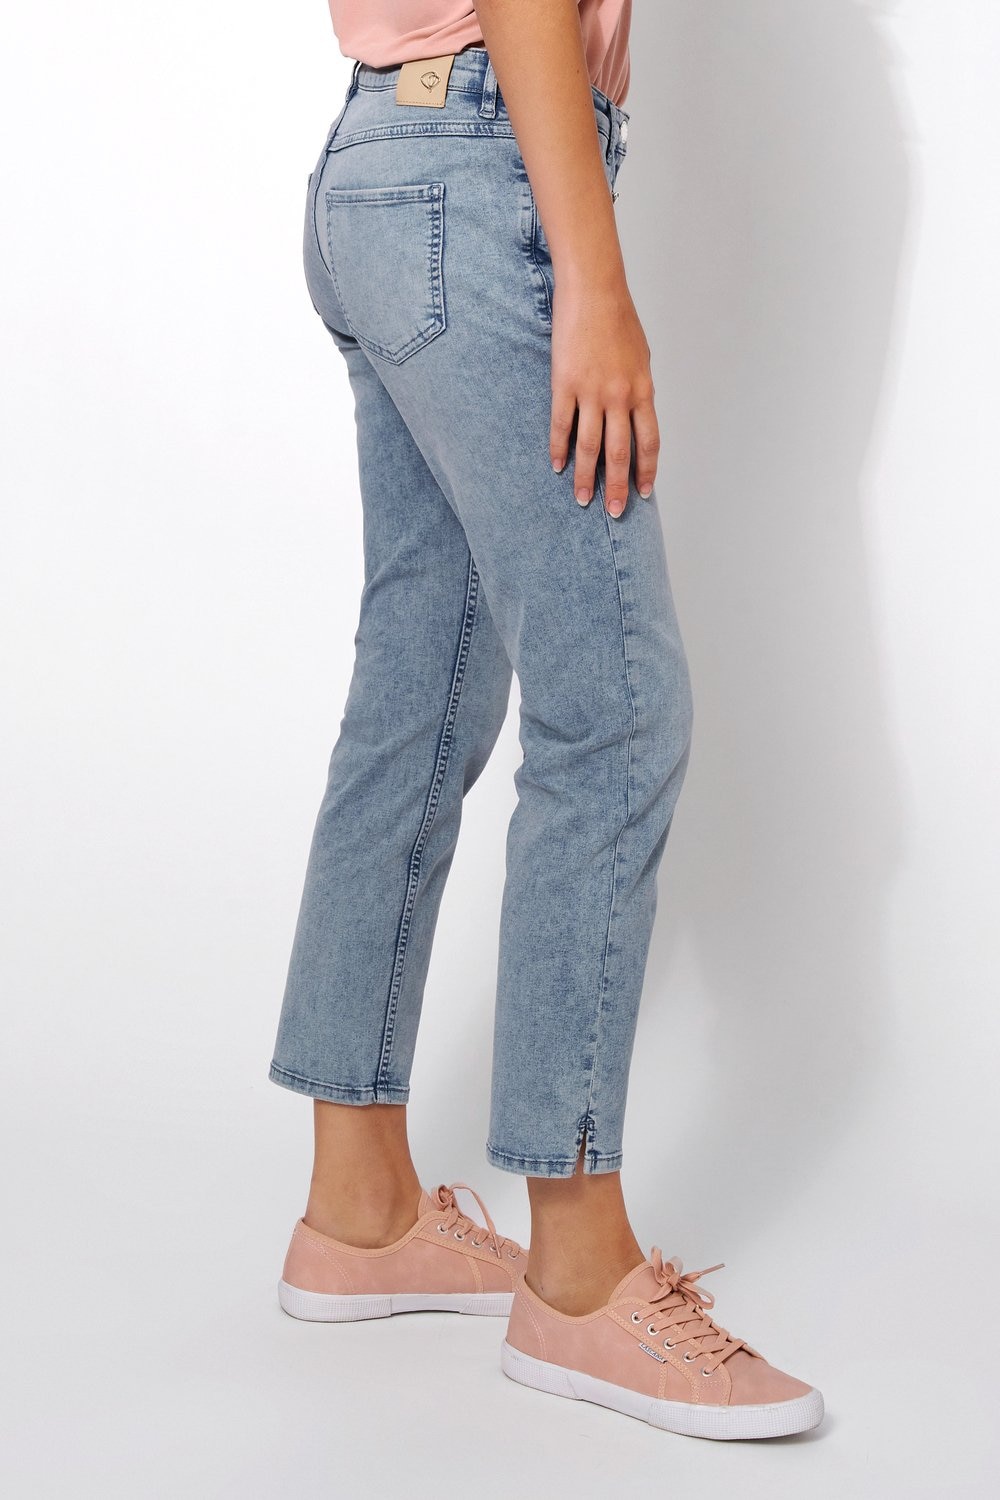 TONI 7/8-Jeans »Perfect Shape Pocket 7/8«, mit schrägen Reissverschlusstaschen